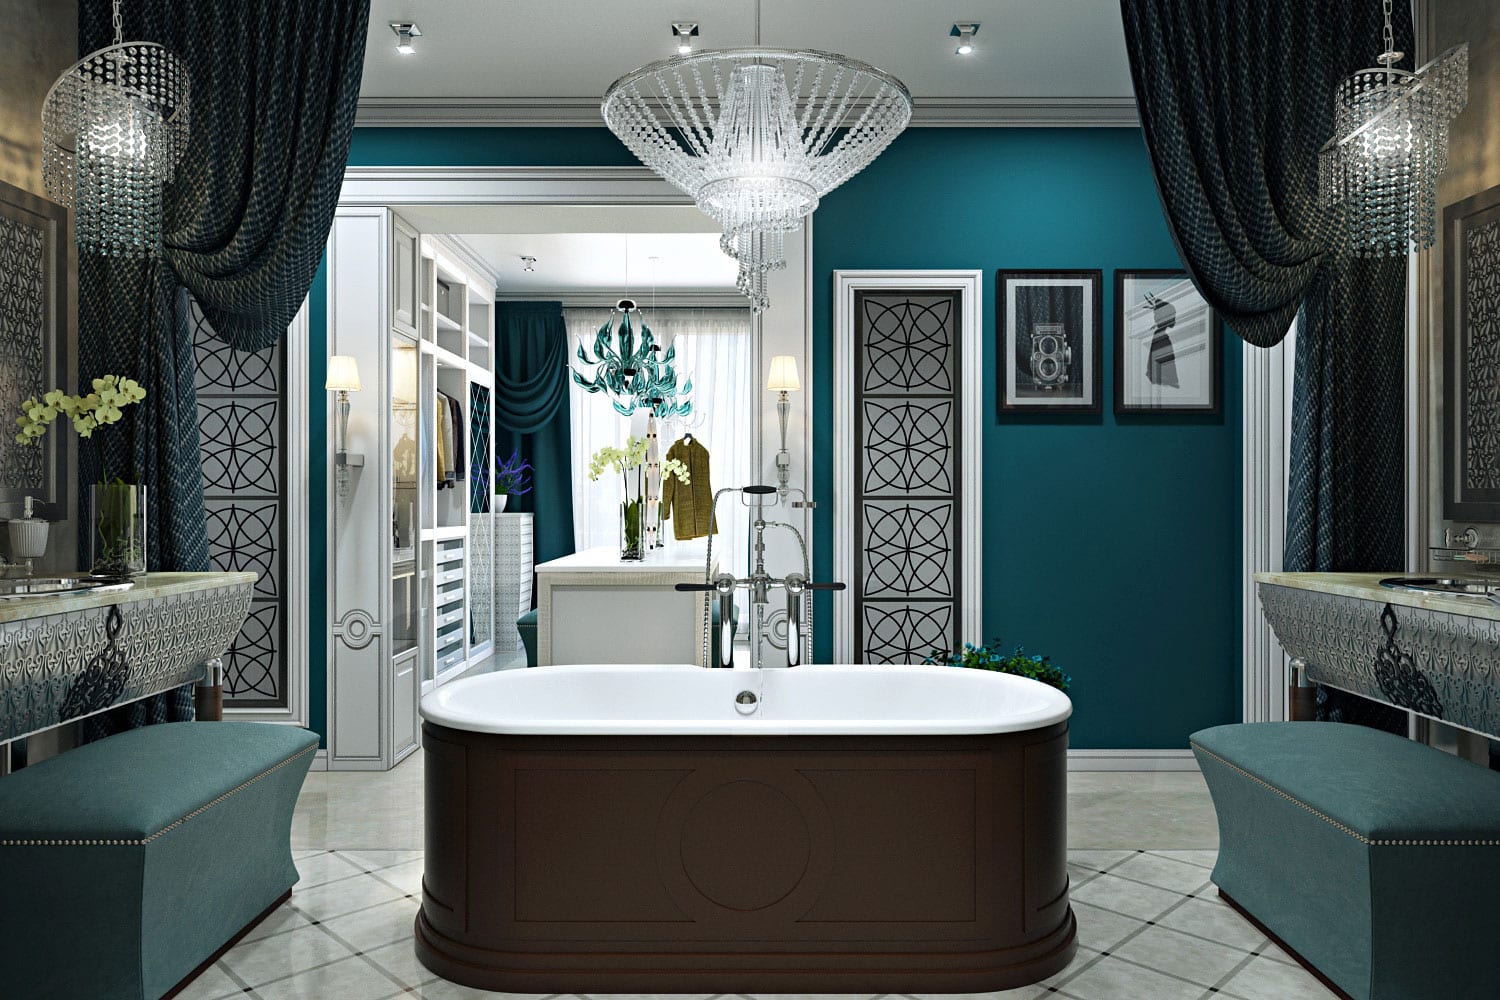 Ванная комната в стиле французского будуара